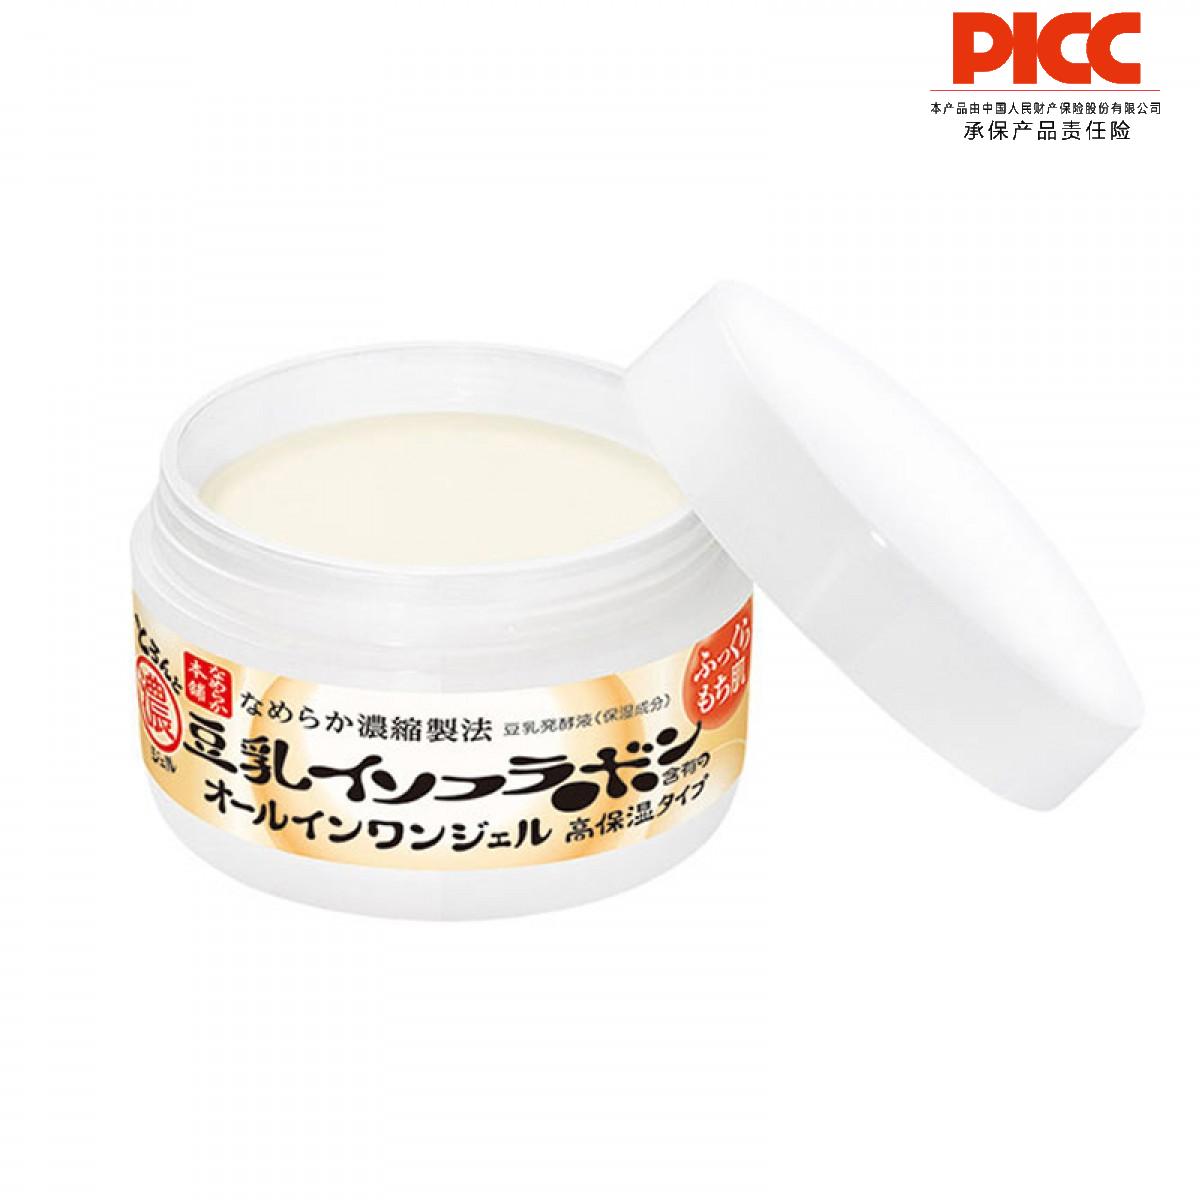 【保稅】日本SANA莎娜豆乳美肌多效超保濕面霜100g 果凍霜